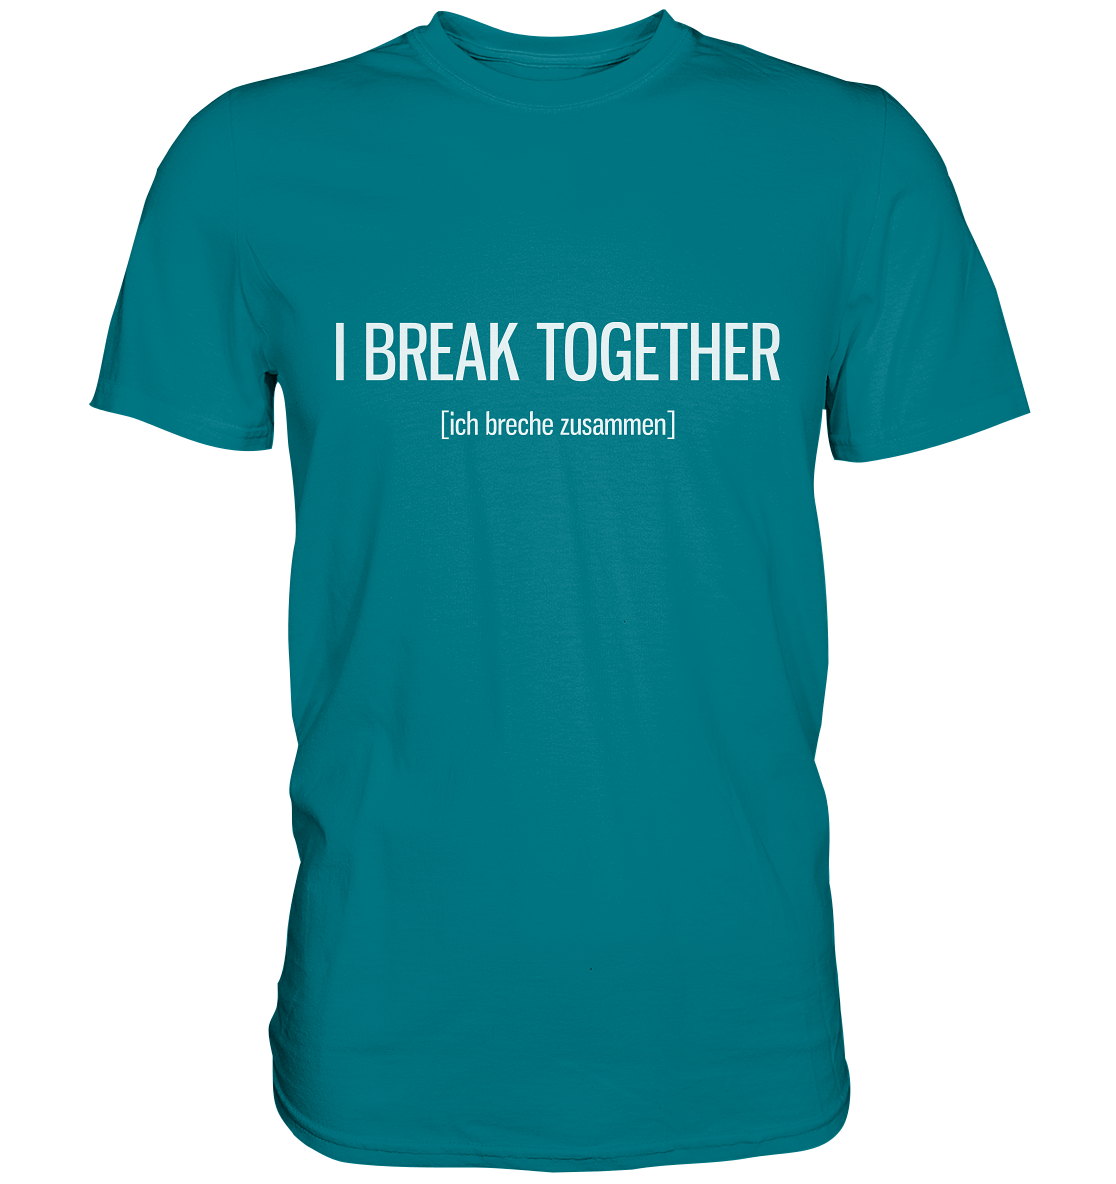 I break together. Englisch - Unisex Premium Shirt